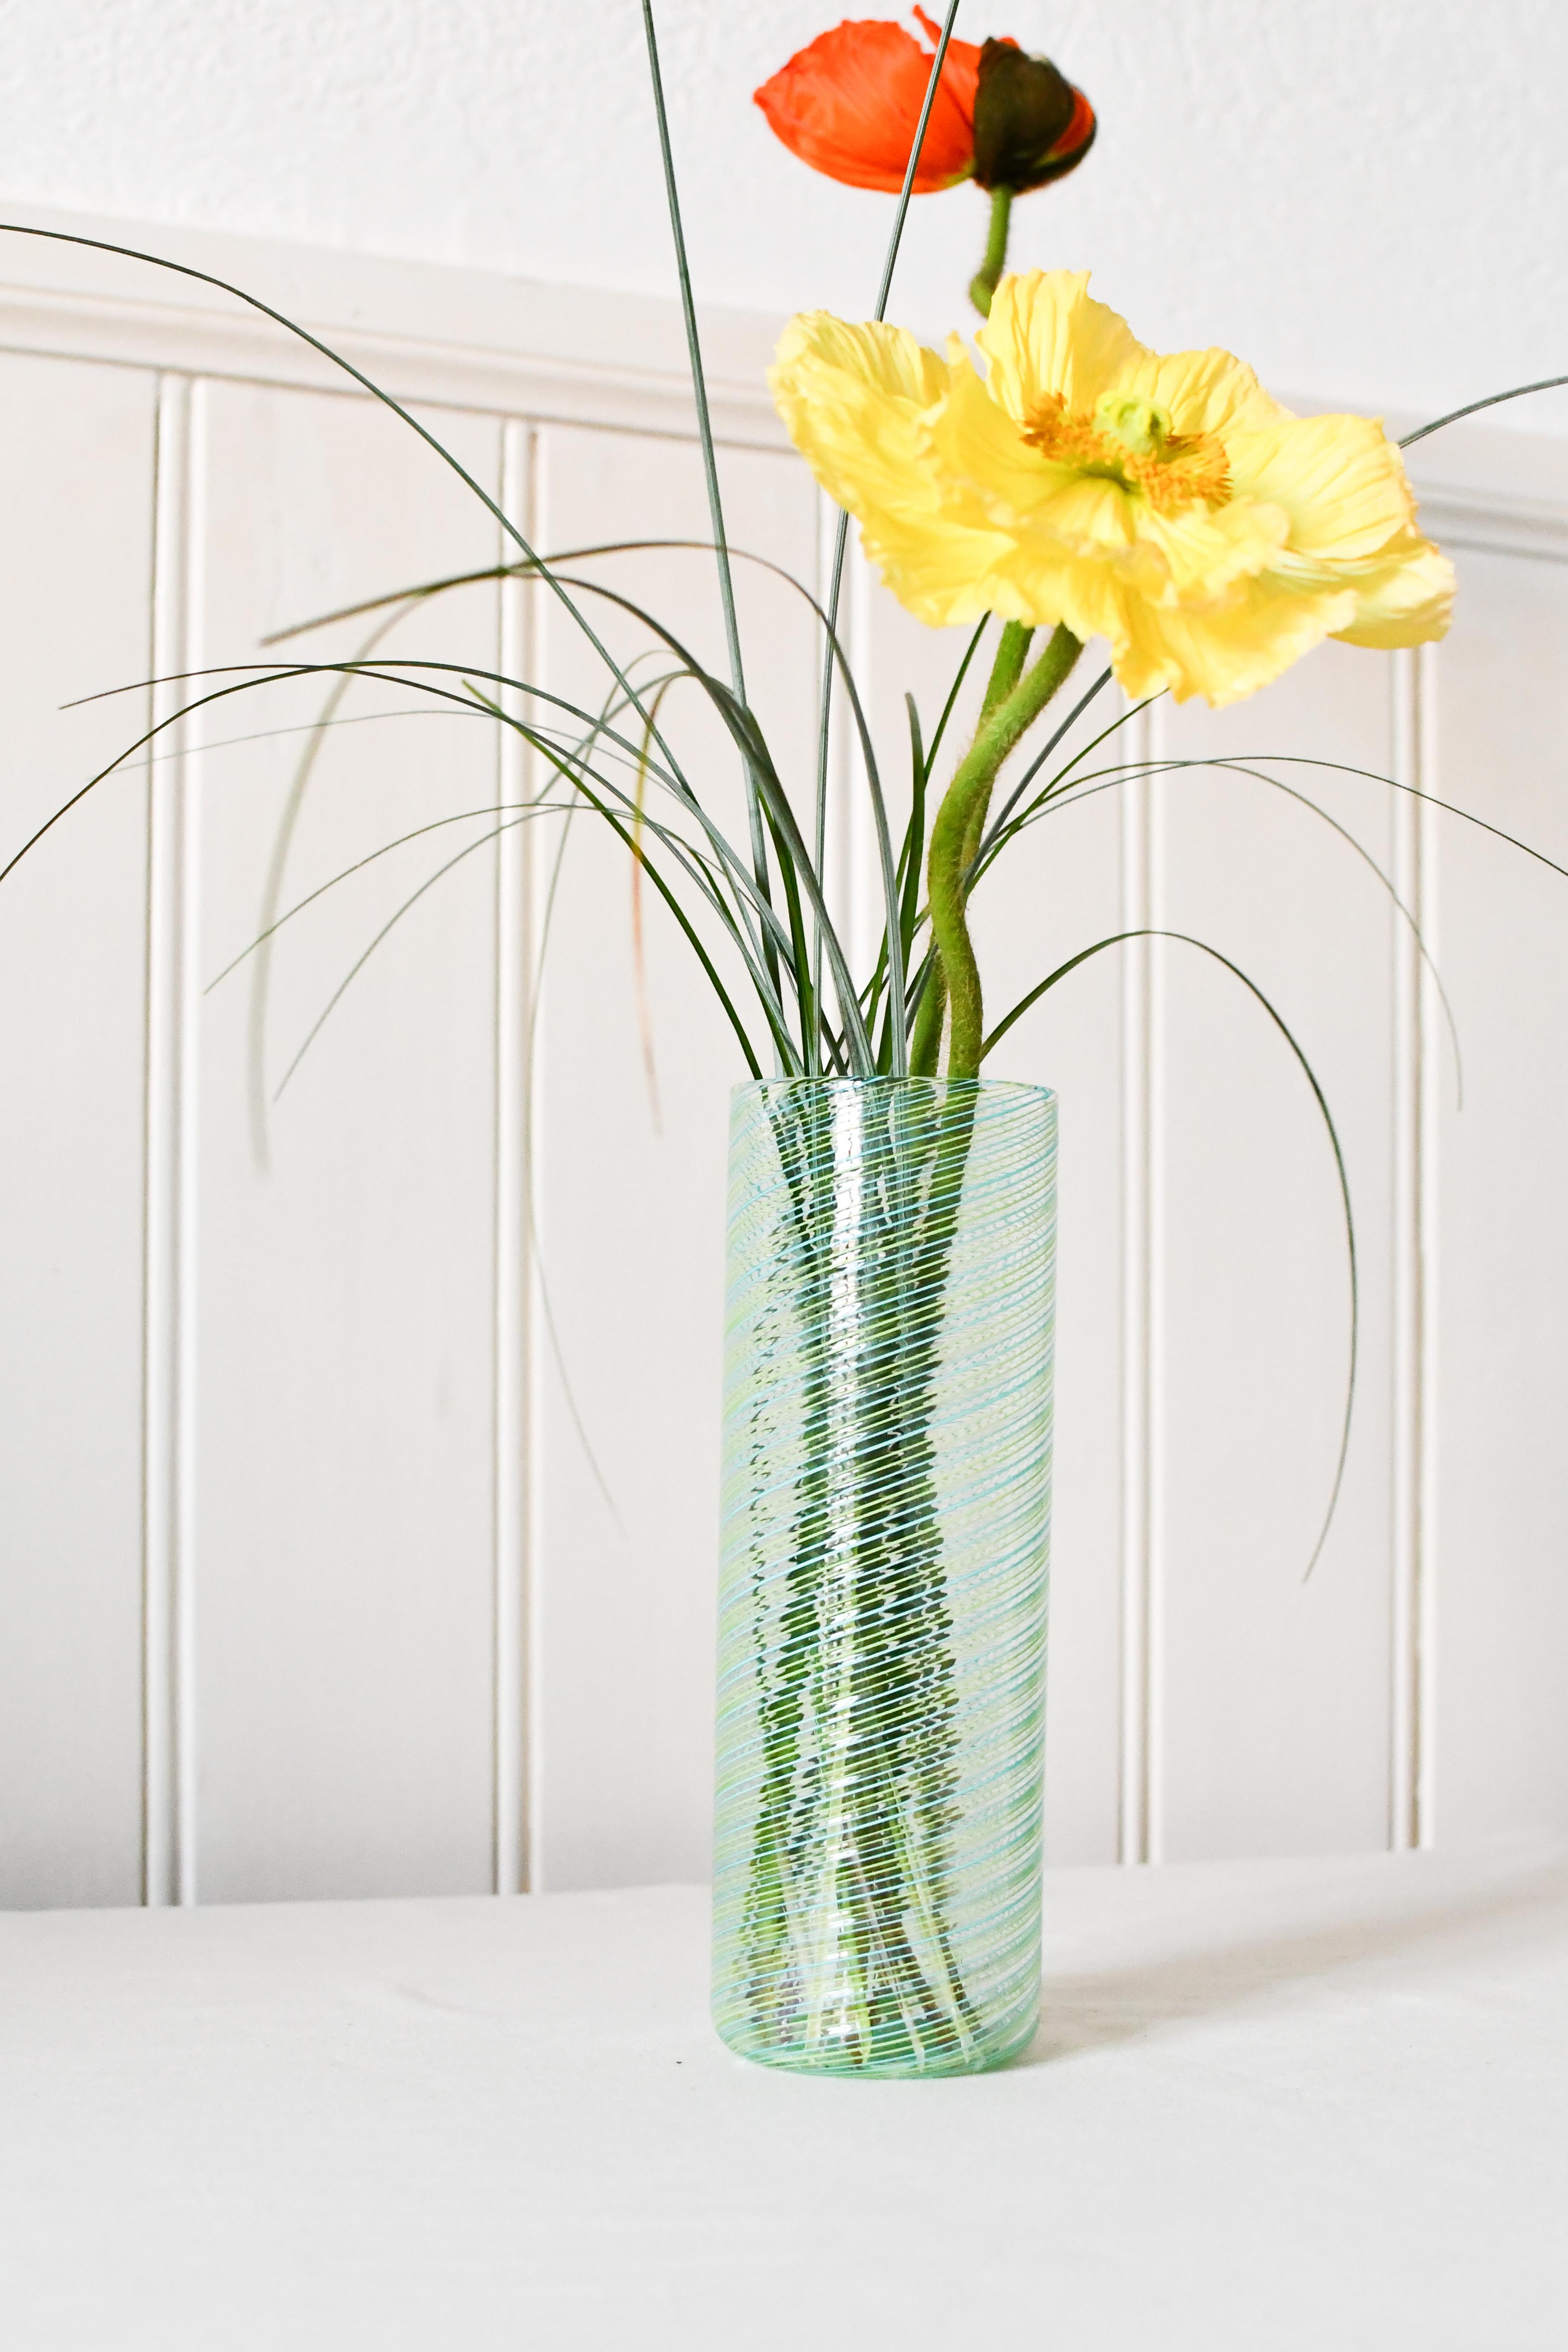 Doppio filo est une collection de vases réalisés en combinant deux couleurs différentes de tiges filigranées. Le motif linéaire et oblique est obtenu grâce à une technique raffinée de fabrication du verre appelée 